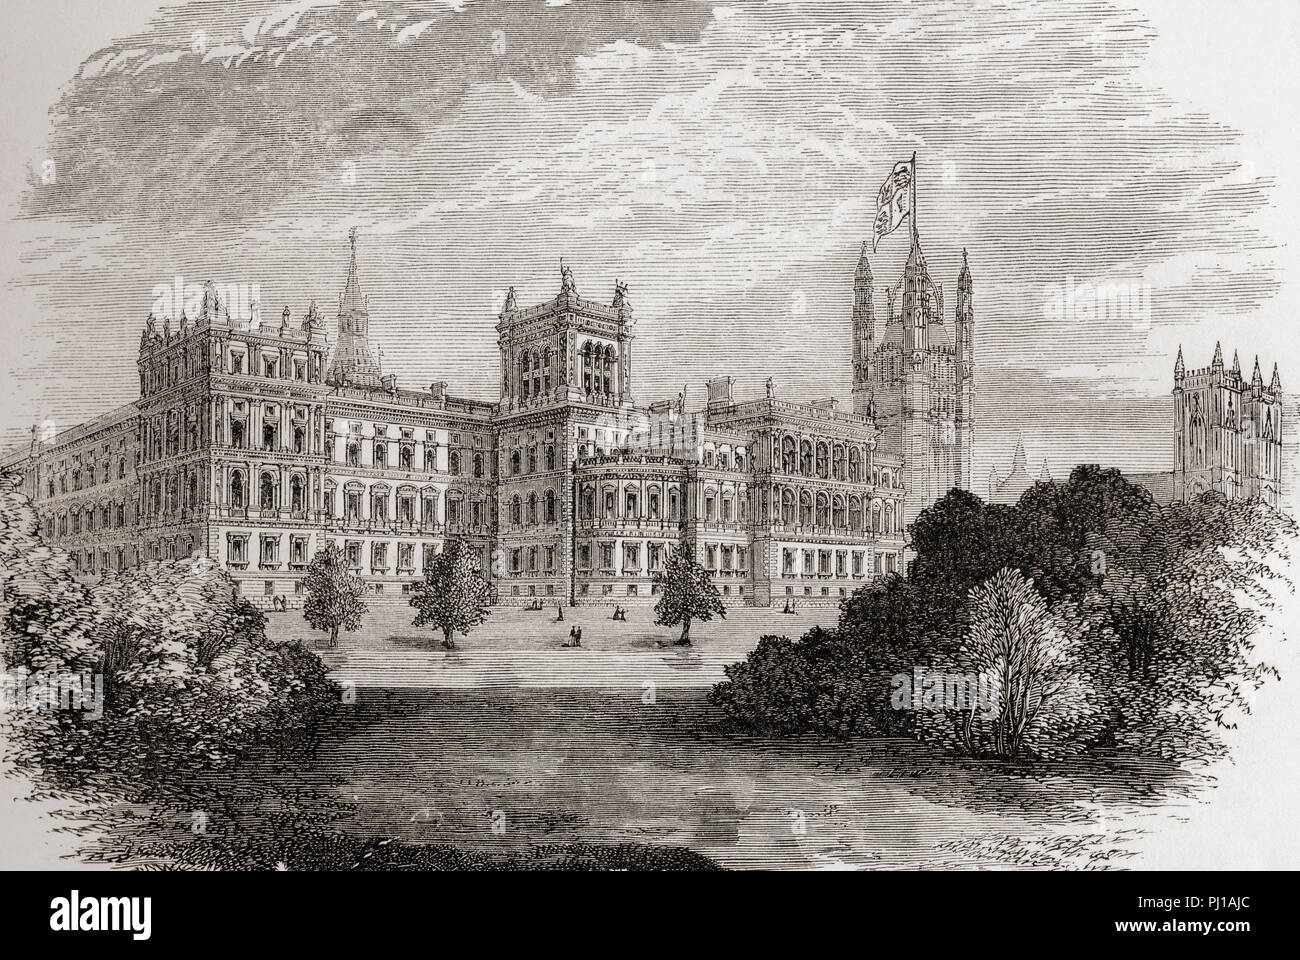 Il Foreign Office visto da St James Park, Londra, Inghilterra nel XIX secolo. Da Londra Foto, pubblicato 1890. Foto Stock